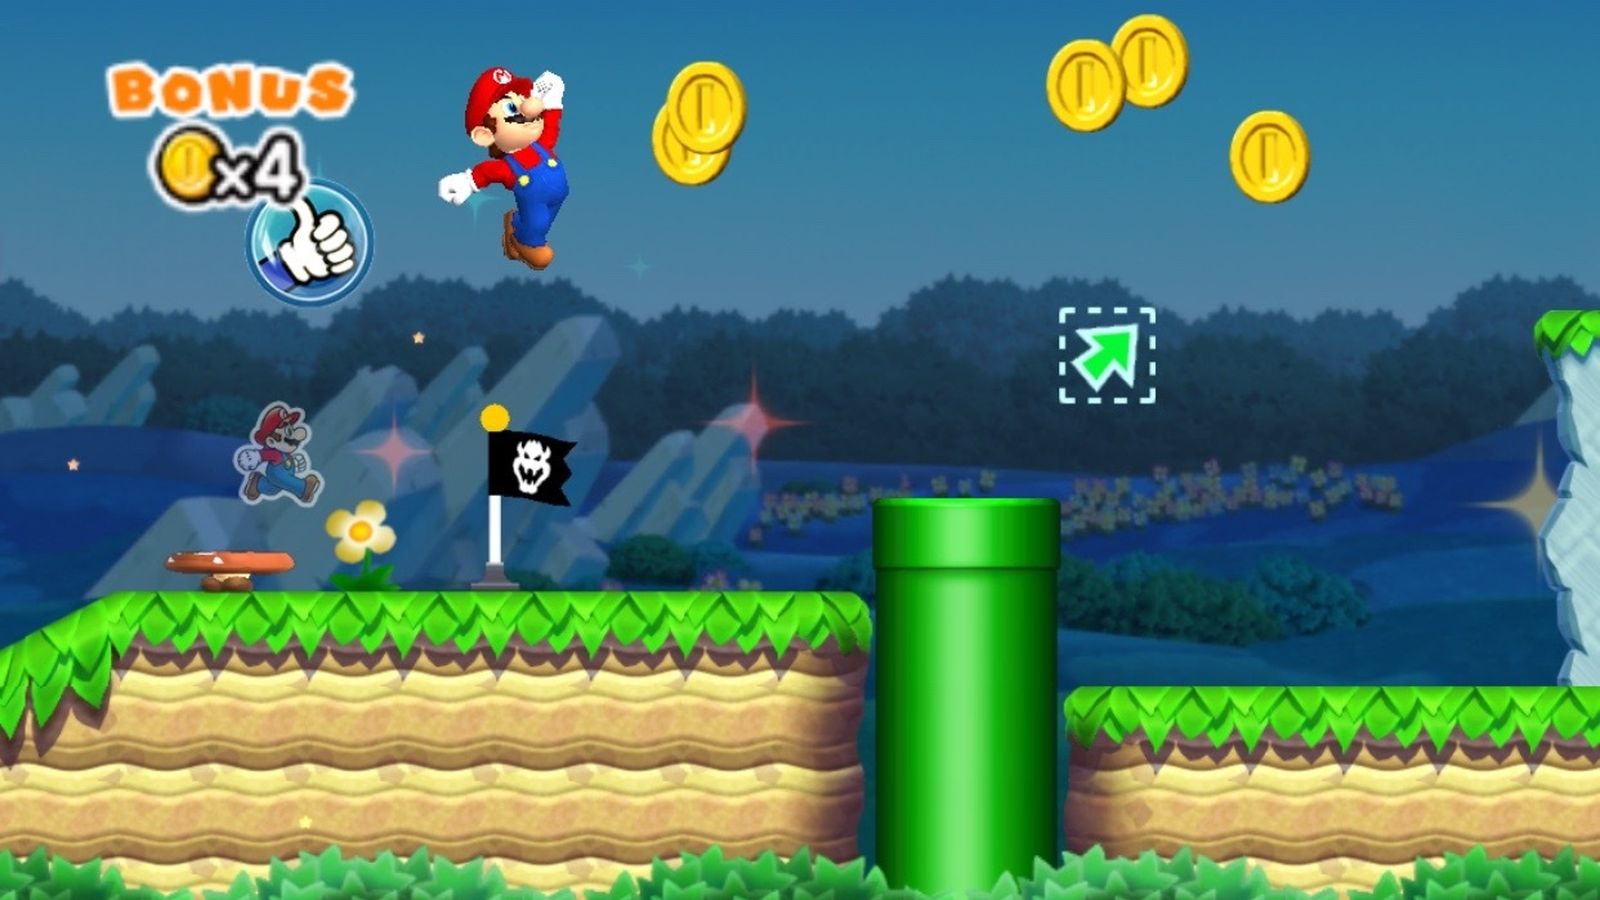 Vírus se passa por jogo Super Mario Run para roubar dados